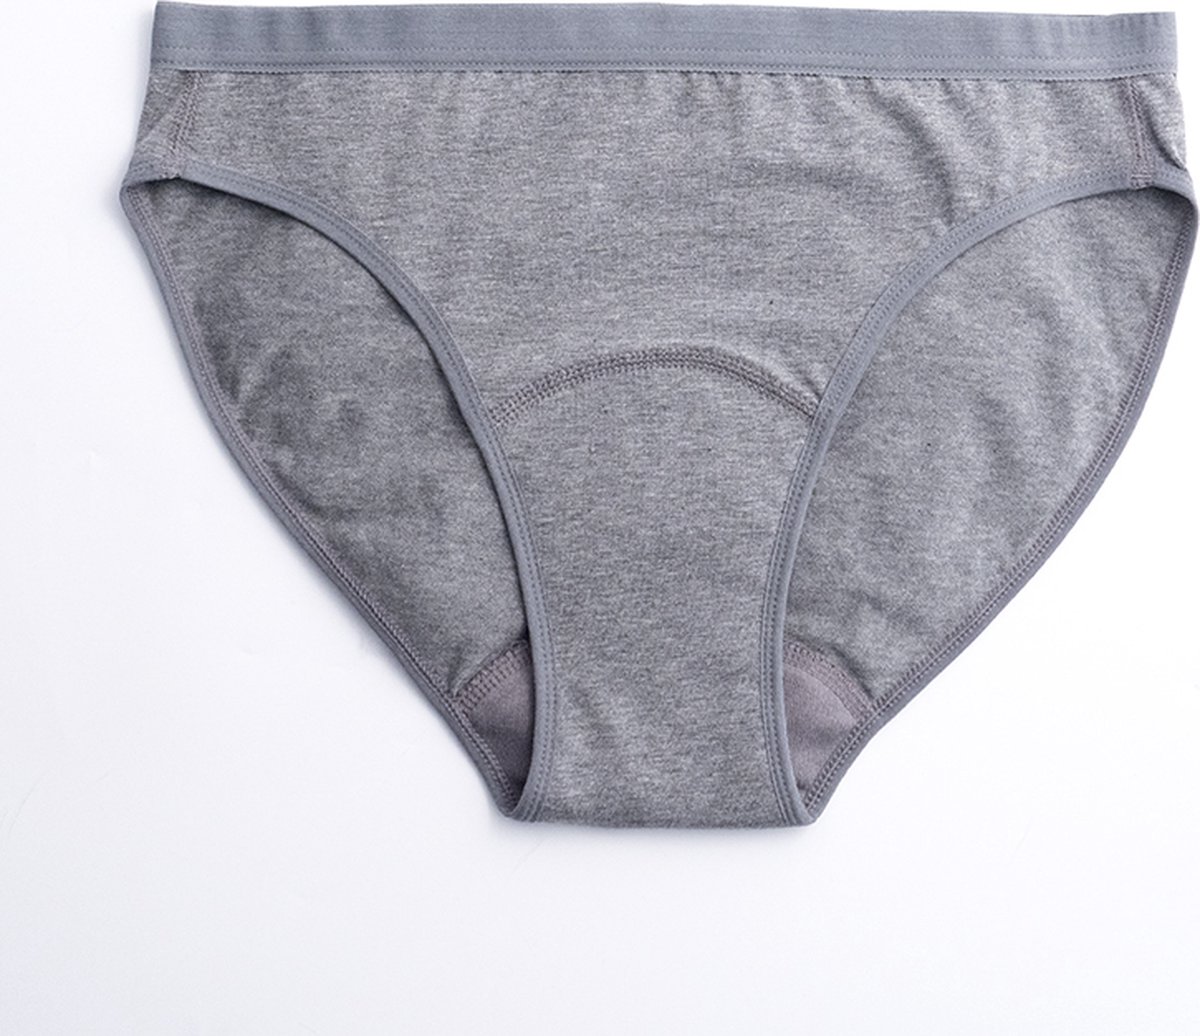 ImseVimse - Imse - menstruatieondergoed - Bikini model period underwear - lichte menstruatie - L - eur 44/46 - grijs